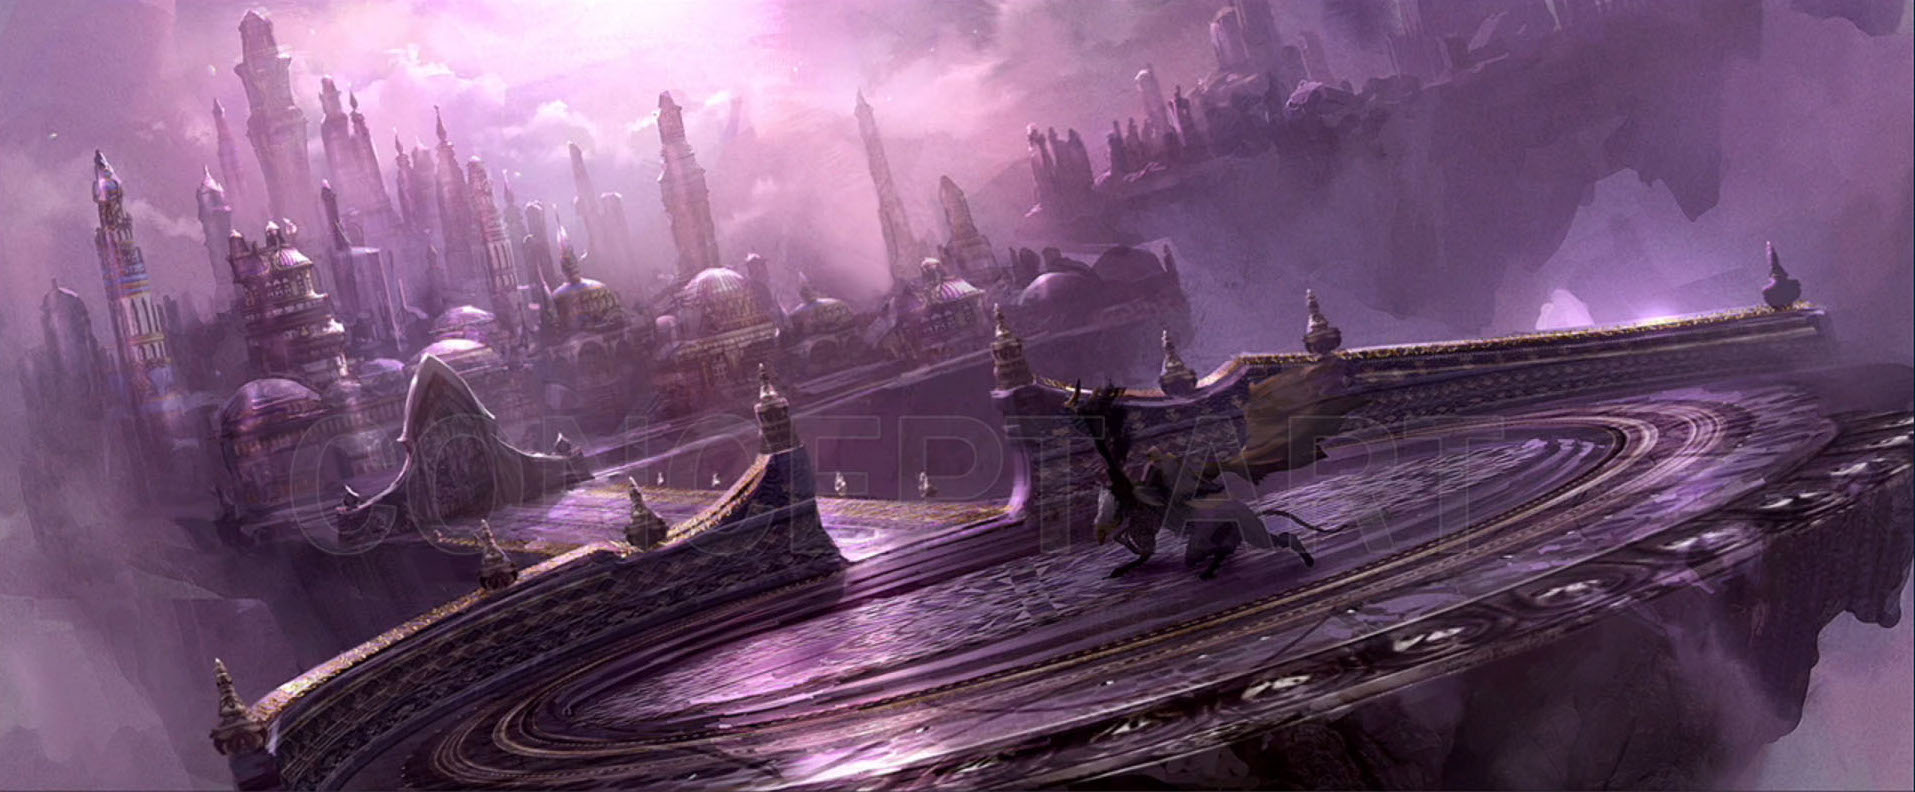 画像集 005 実写映画版 Warcraft はオリジンストーリーとなり Avatarと同じような技術で作られる 映画監督と特殊効果の担当者が明らかにする 4gamer Net